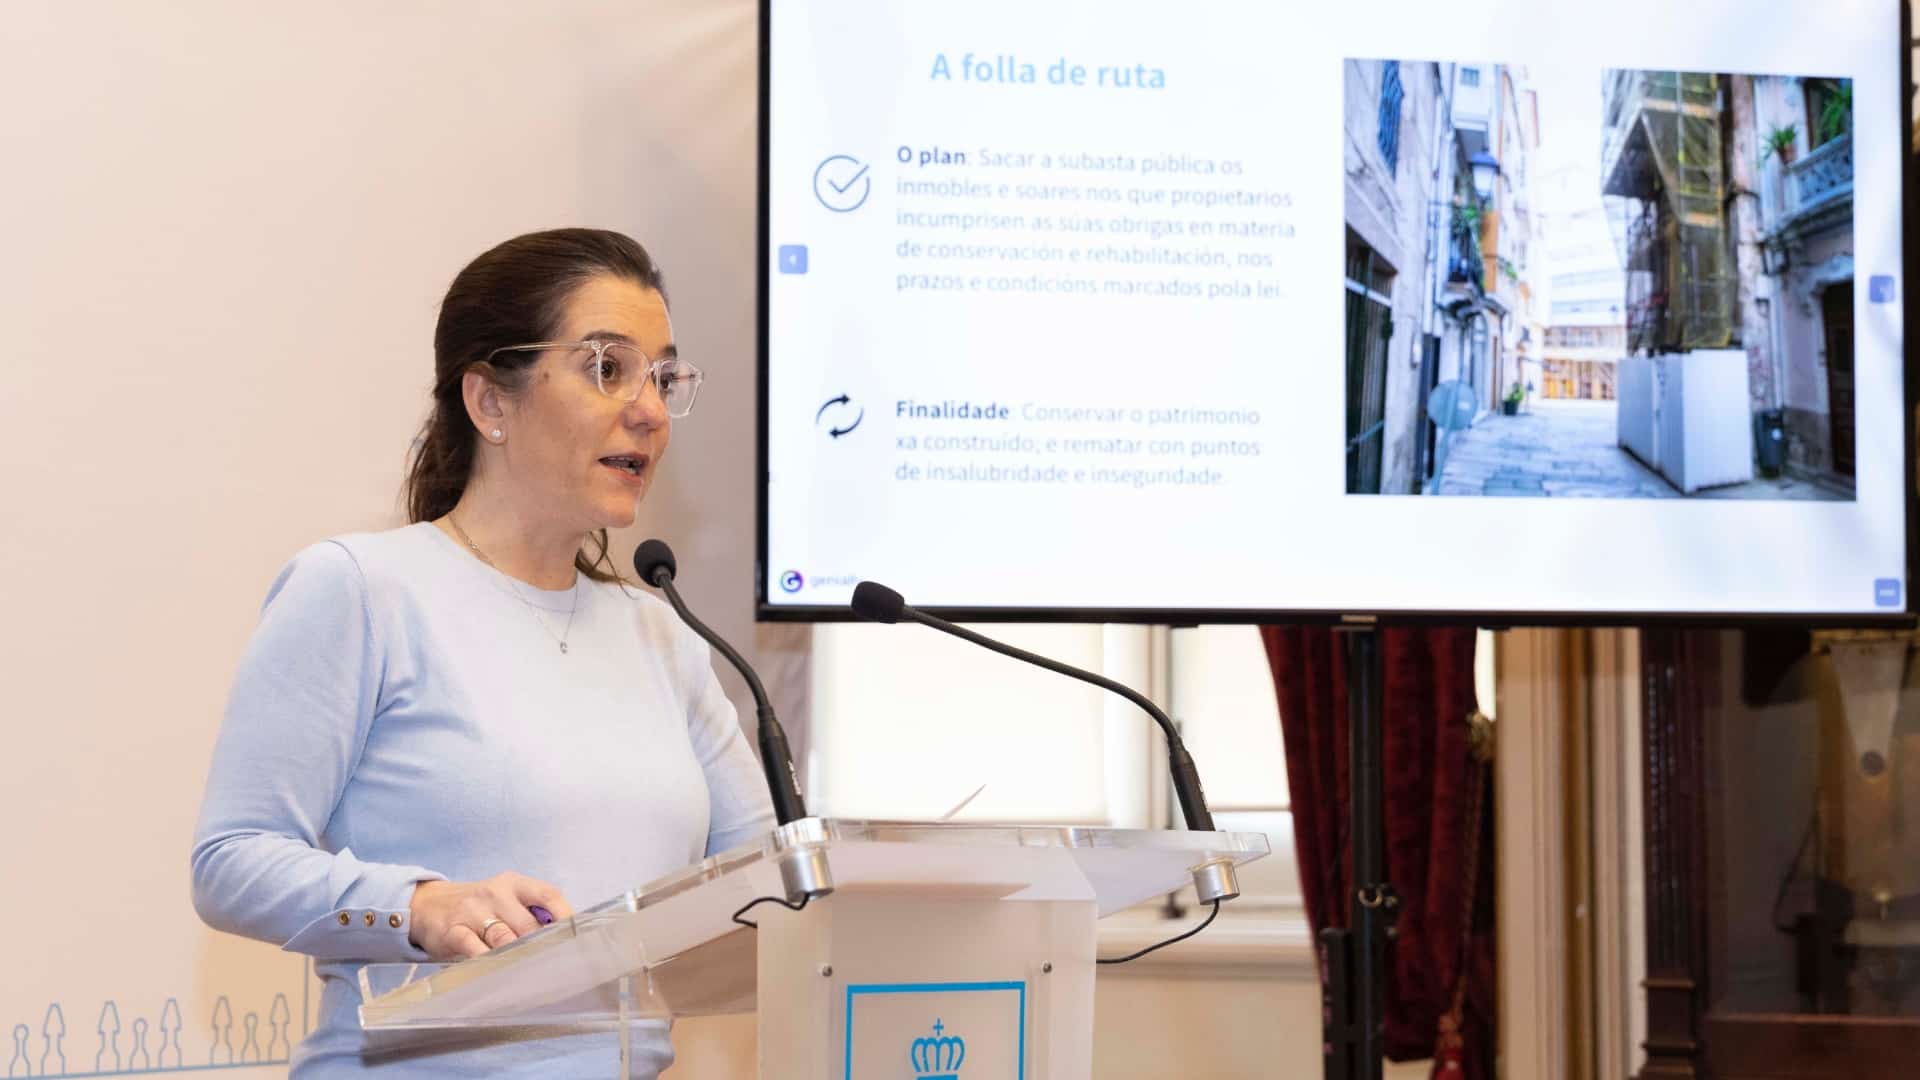 La alcaldesa de A Coruña, Inés Rey, en la rueda de prensa | CONCELLO DA CORUÑA